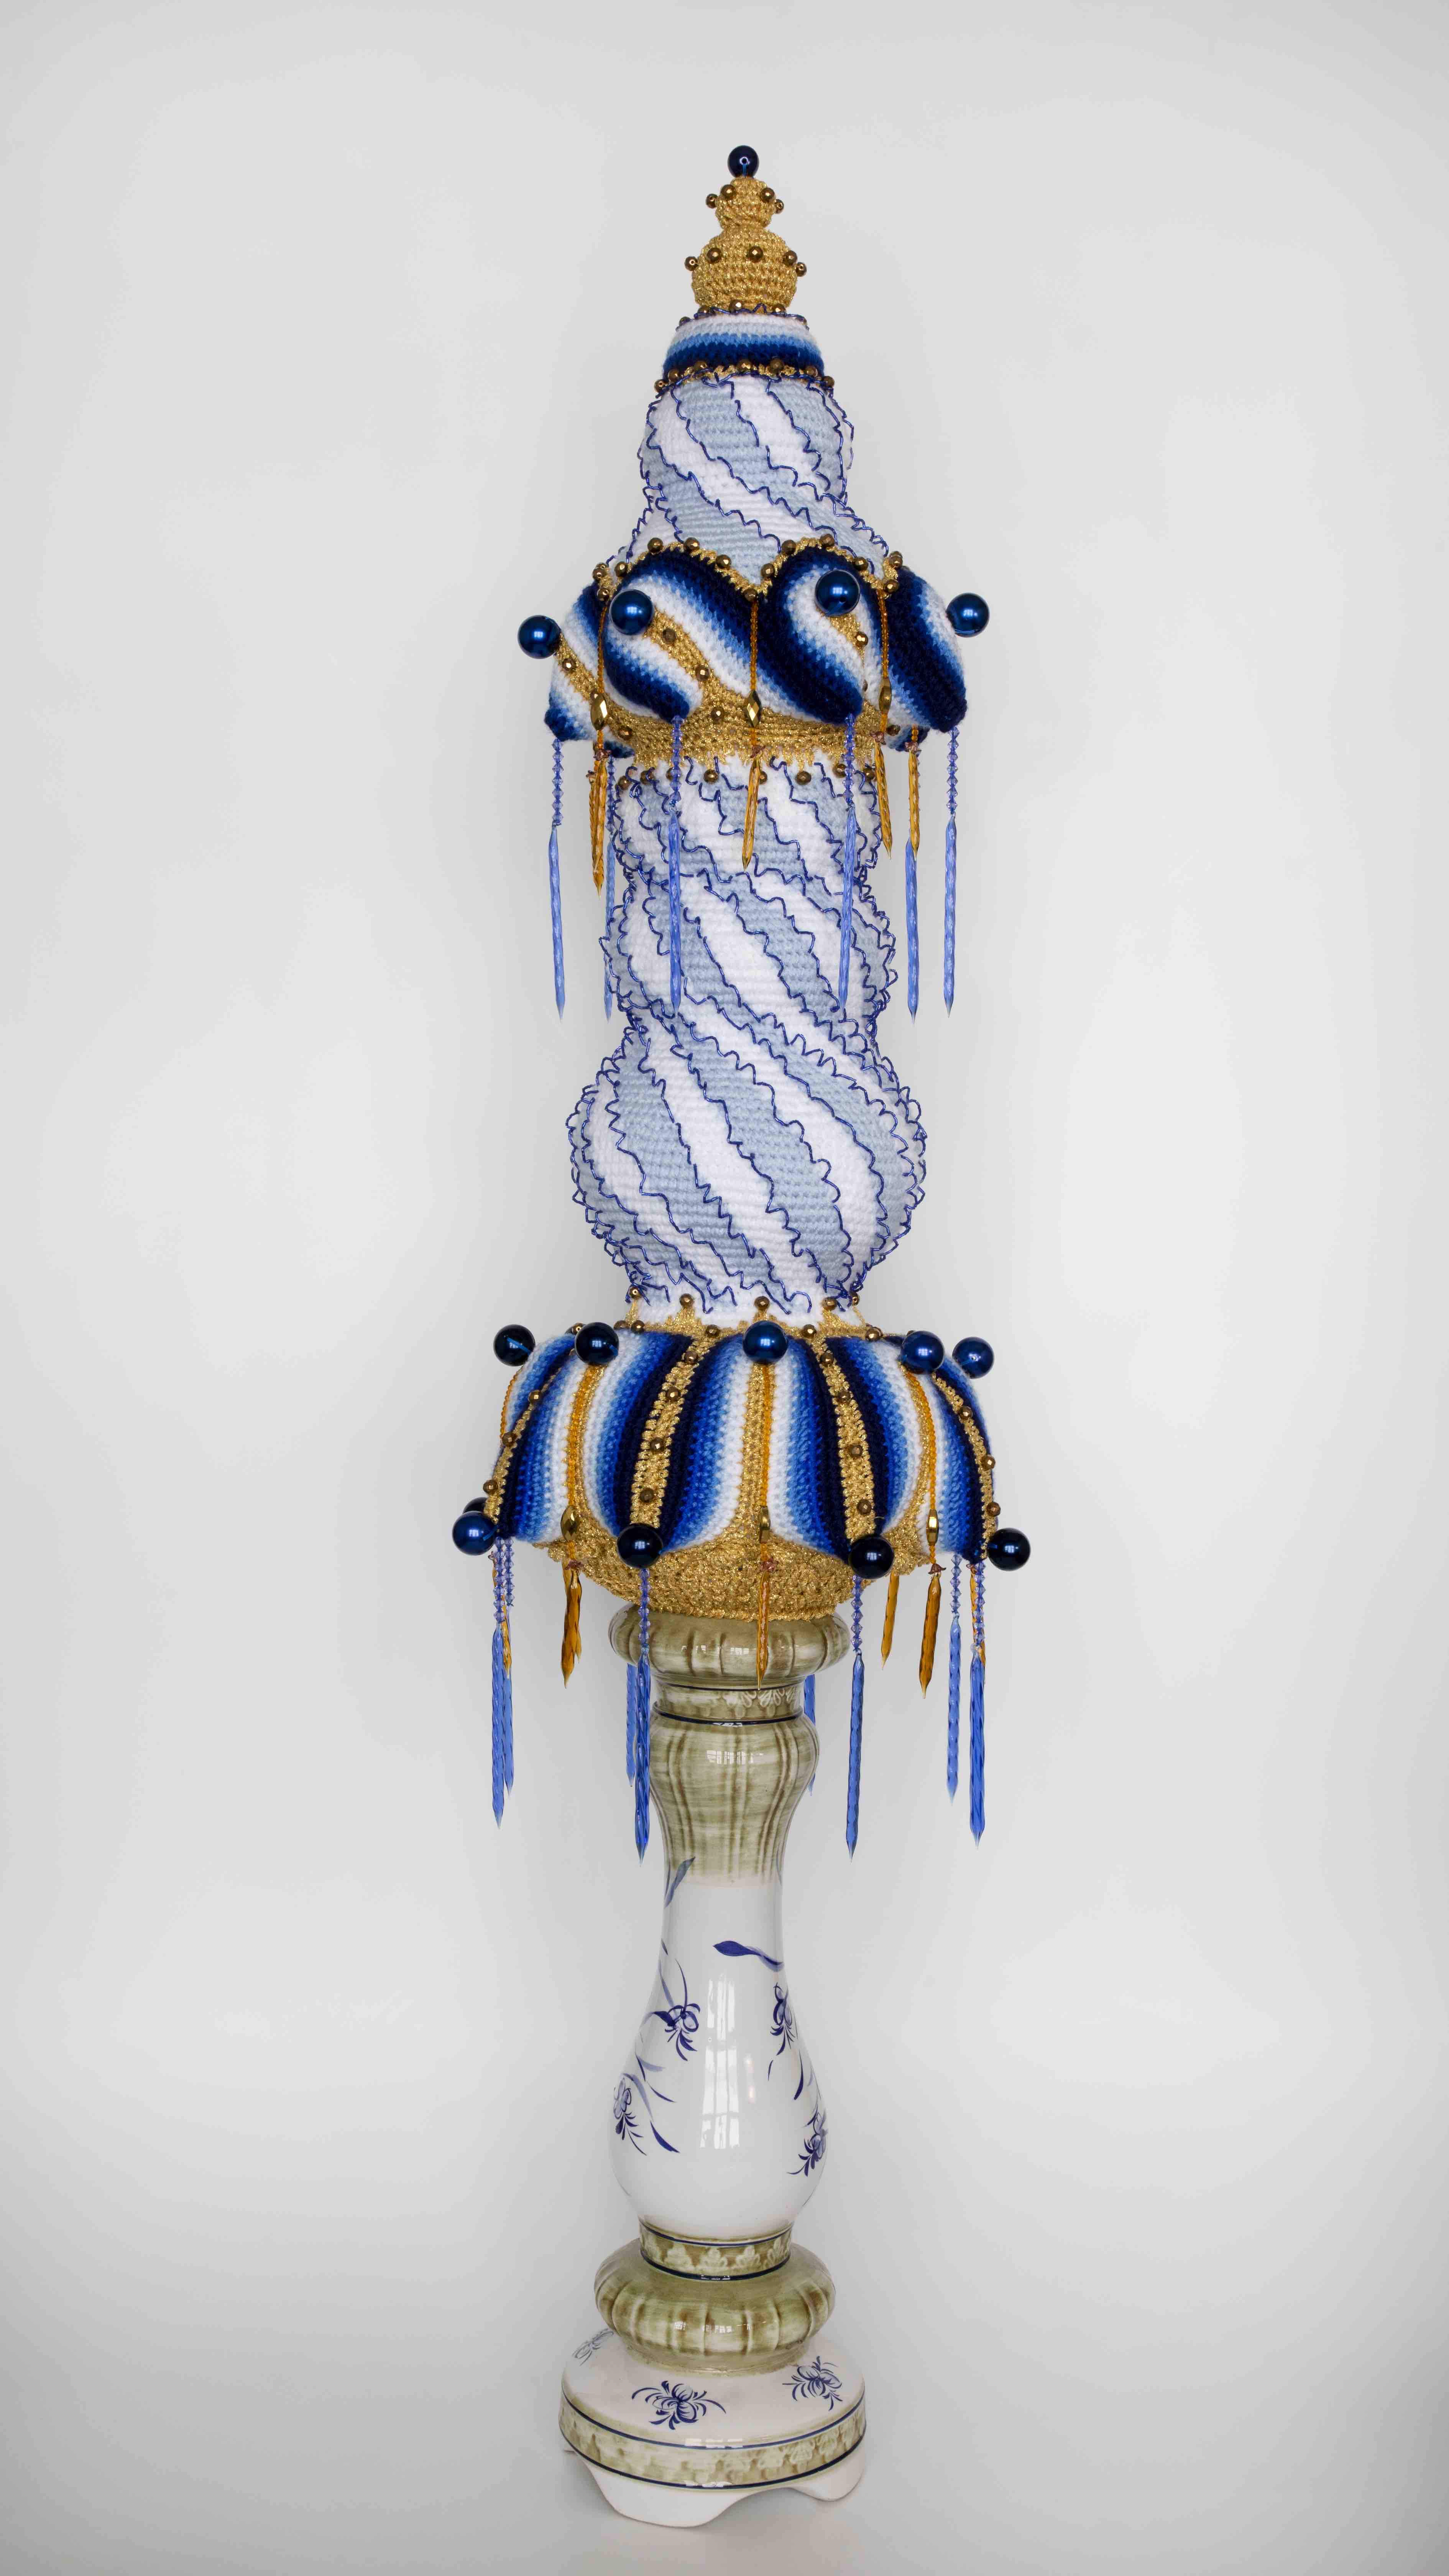 2021, painted faience, handmade woollen crochet, glass ornaments, polyester 158 x Ø 42 cm